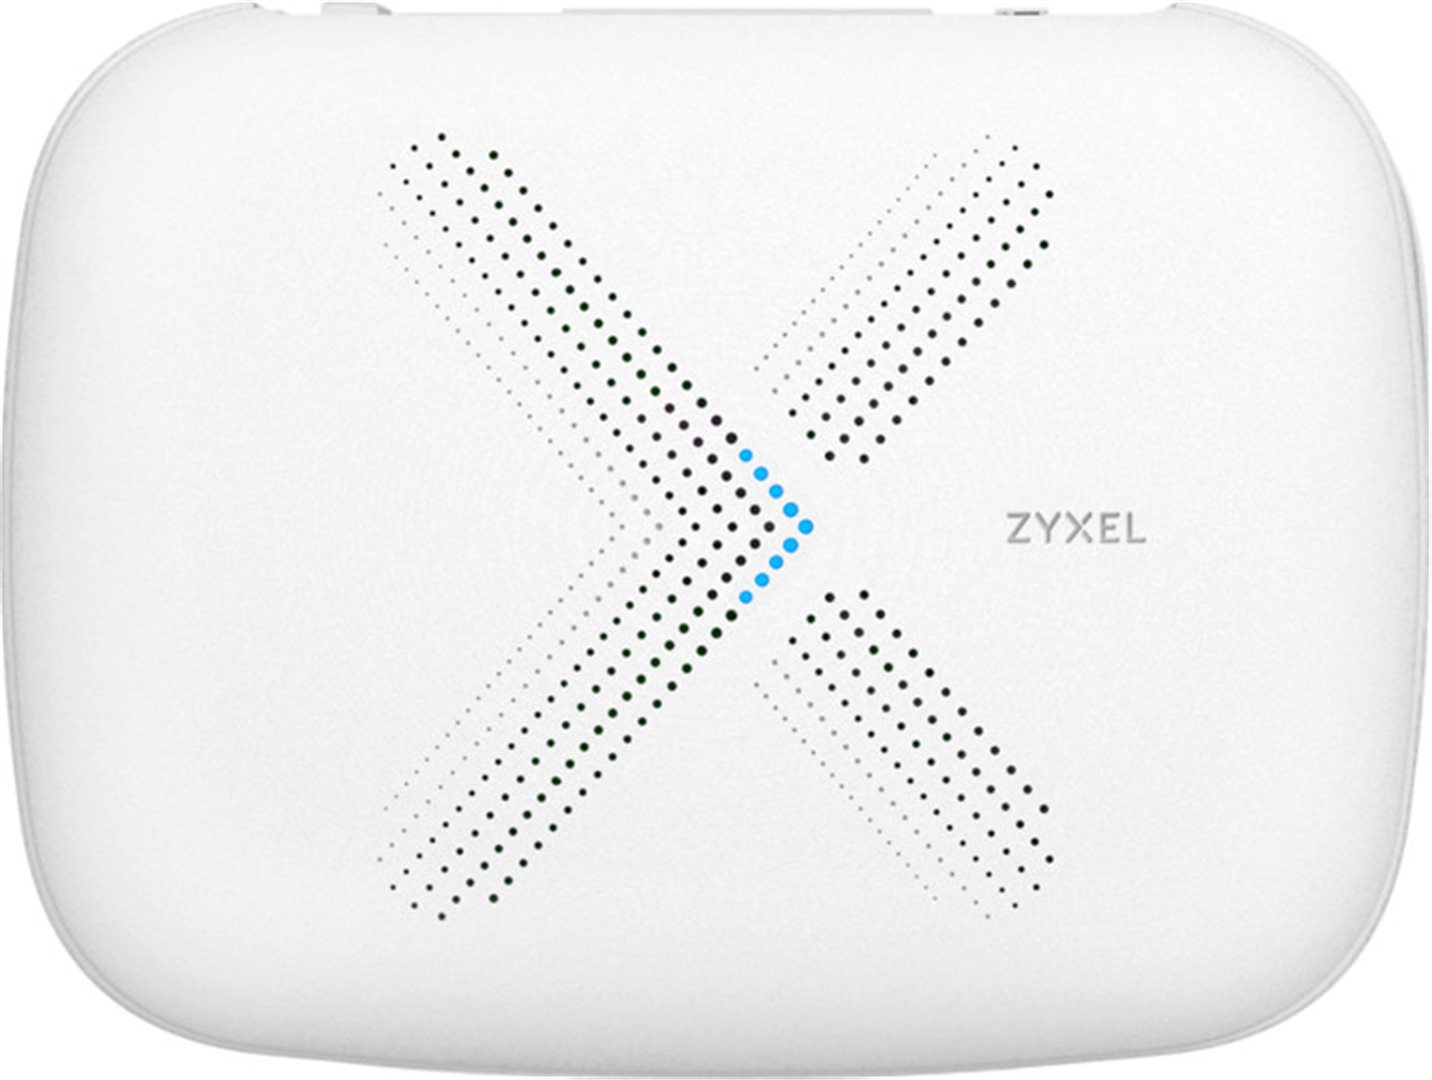 Zyxel WSQ50, Multy X WiFi System (Single) AC3000 Tri-Band WiFi